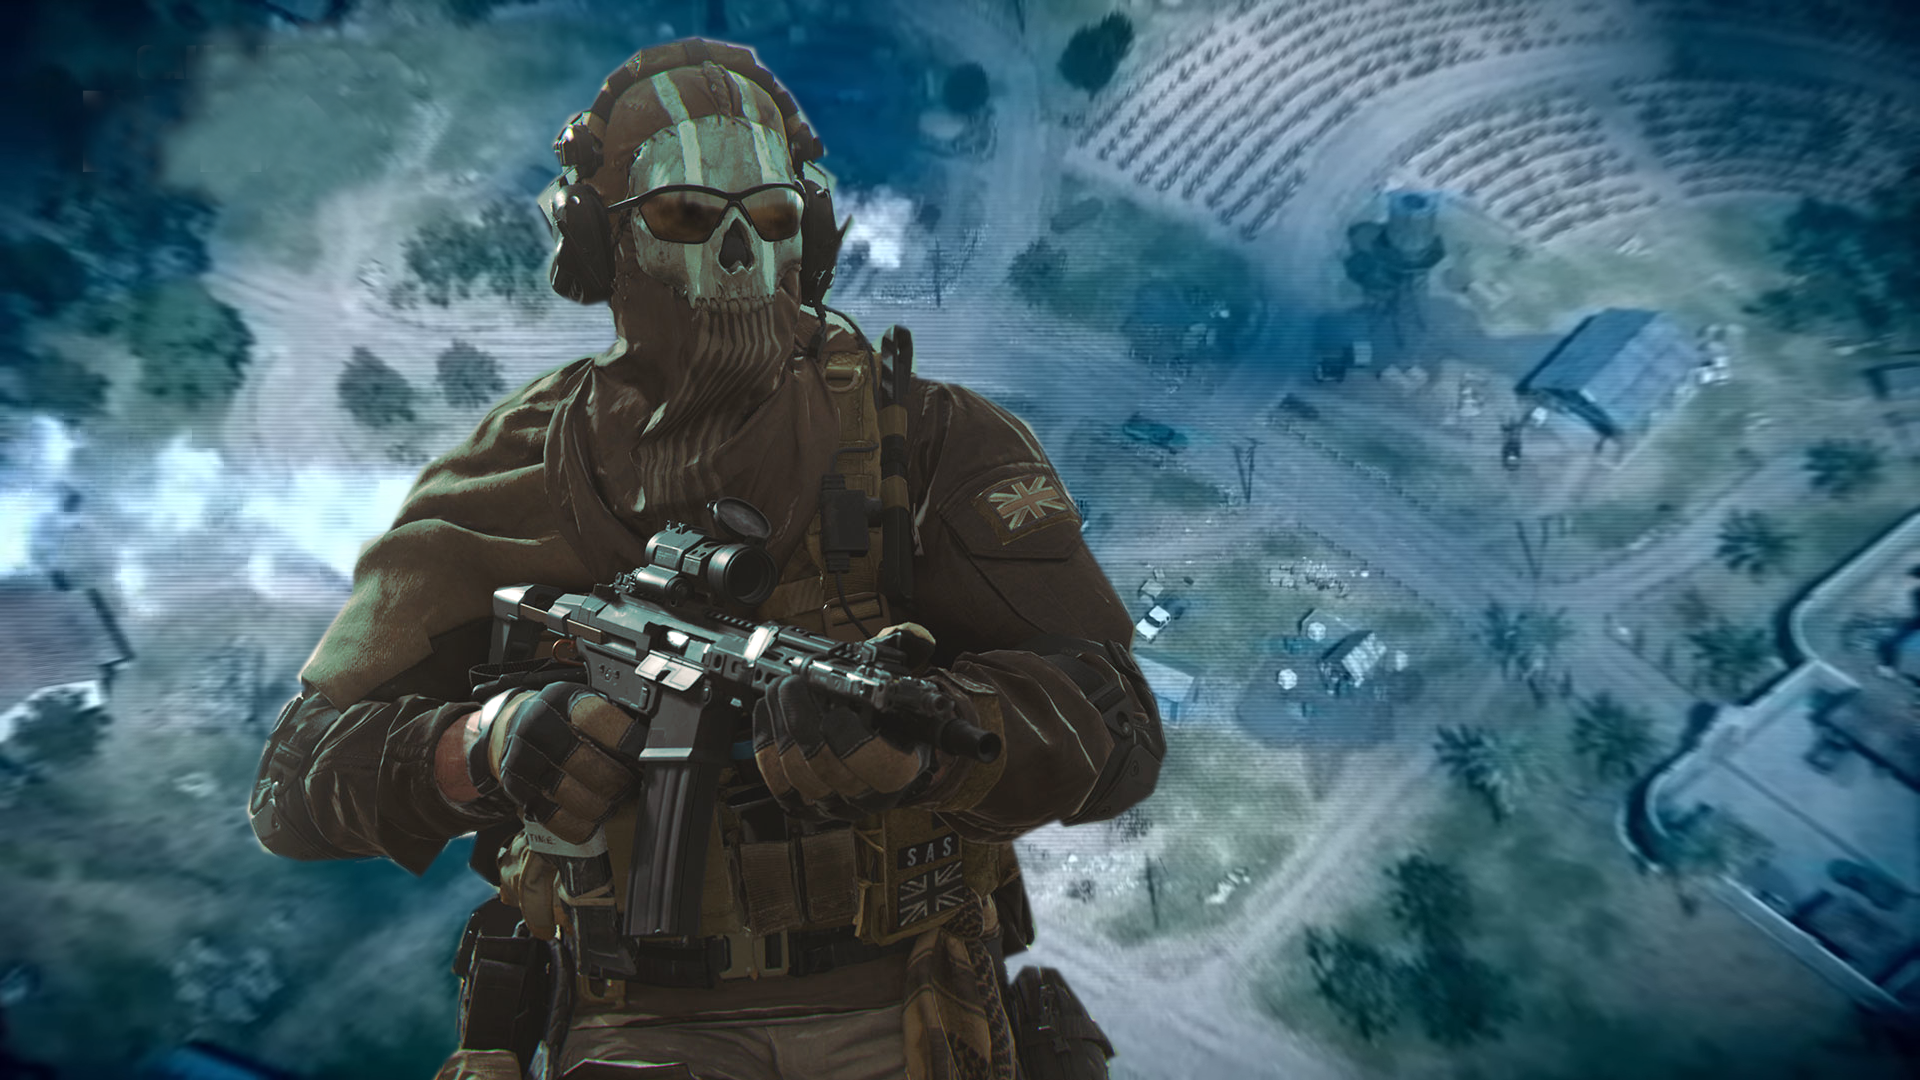 Bilder zu Call of Duty Modern Warfare 2: Leak enthüllt Multiplayer-Maps, Modi und mehr